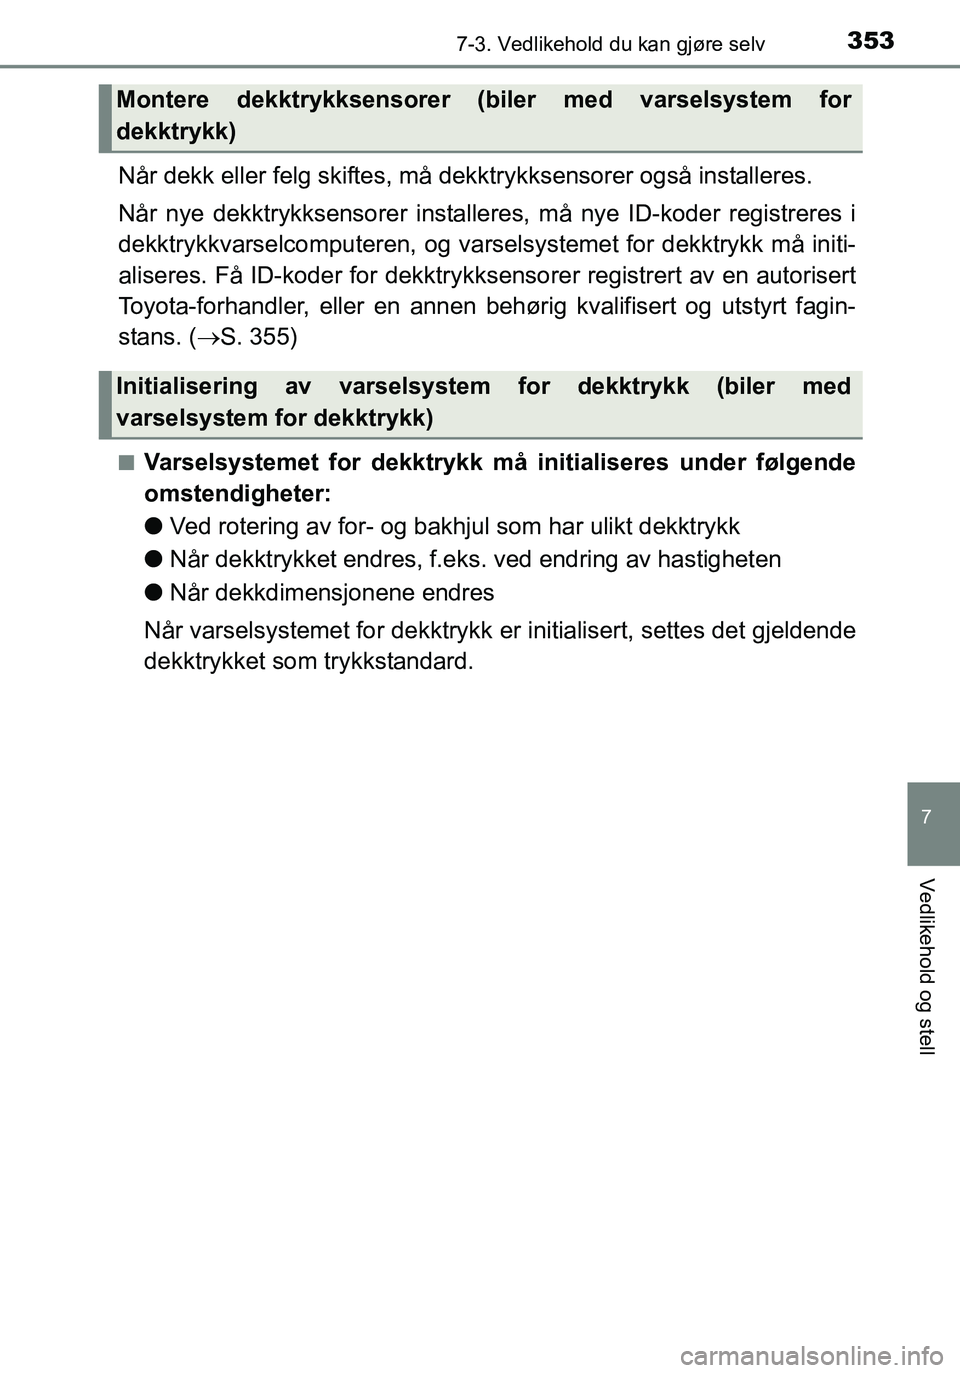 TOYOTA YARIS 2016  Instruksjoner for bruk (in Norwegian) 3537-3. Vedlikehold du kan gjøre selv
7
Vedlikehold og stell
OM52G04NO
Når dekk eller felg skiftes, må dekktrykksensorer også installeres.
Når nye dekktrykksensorer installeres, må nye ID-koder 